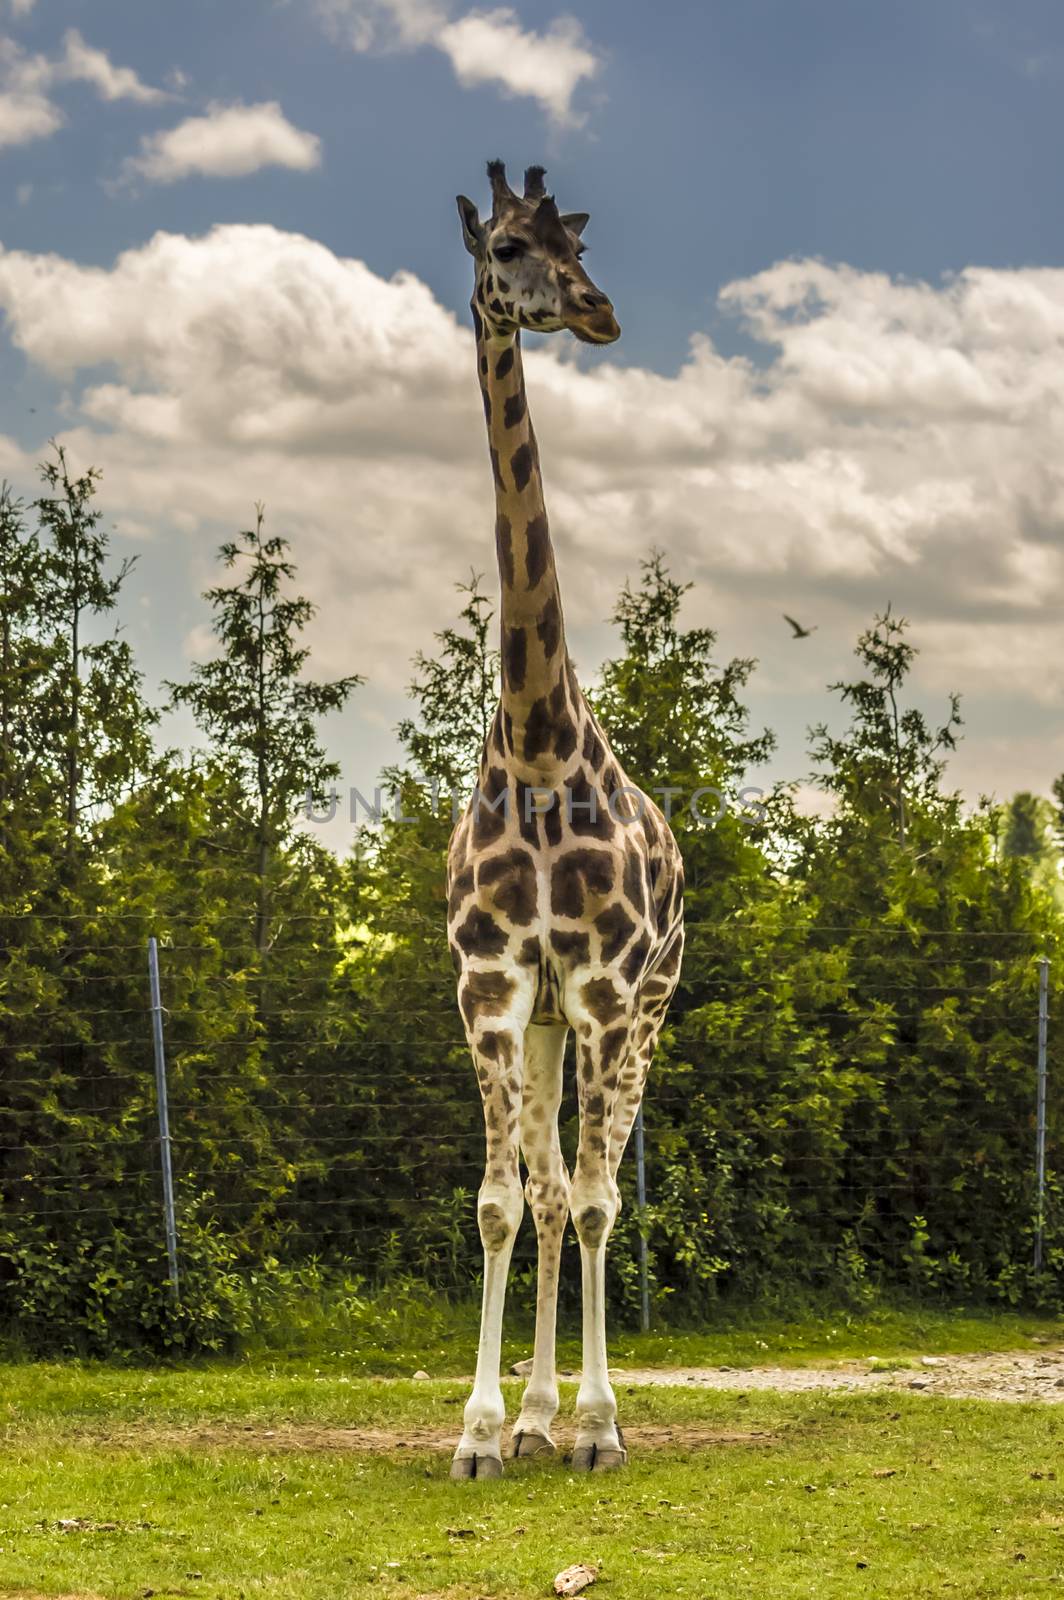 Giraffe by vladikpod